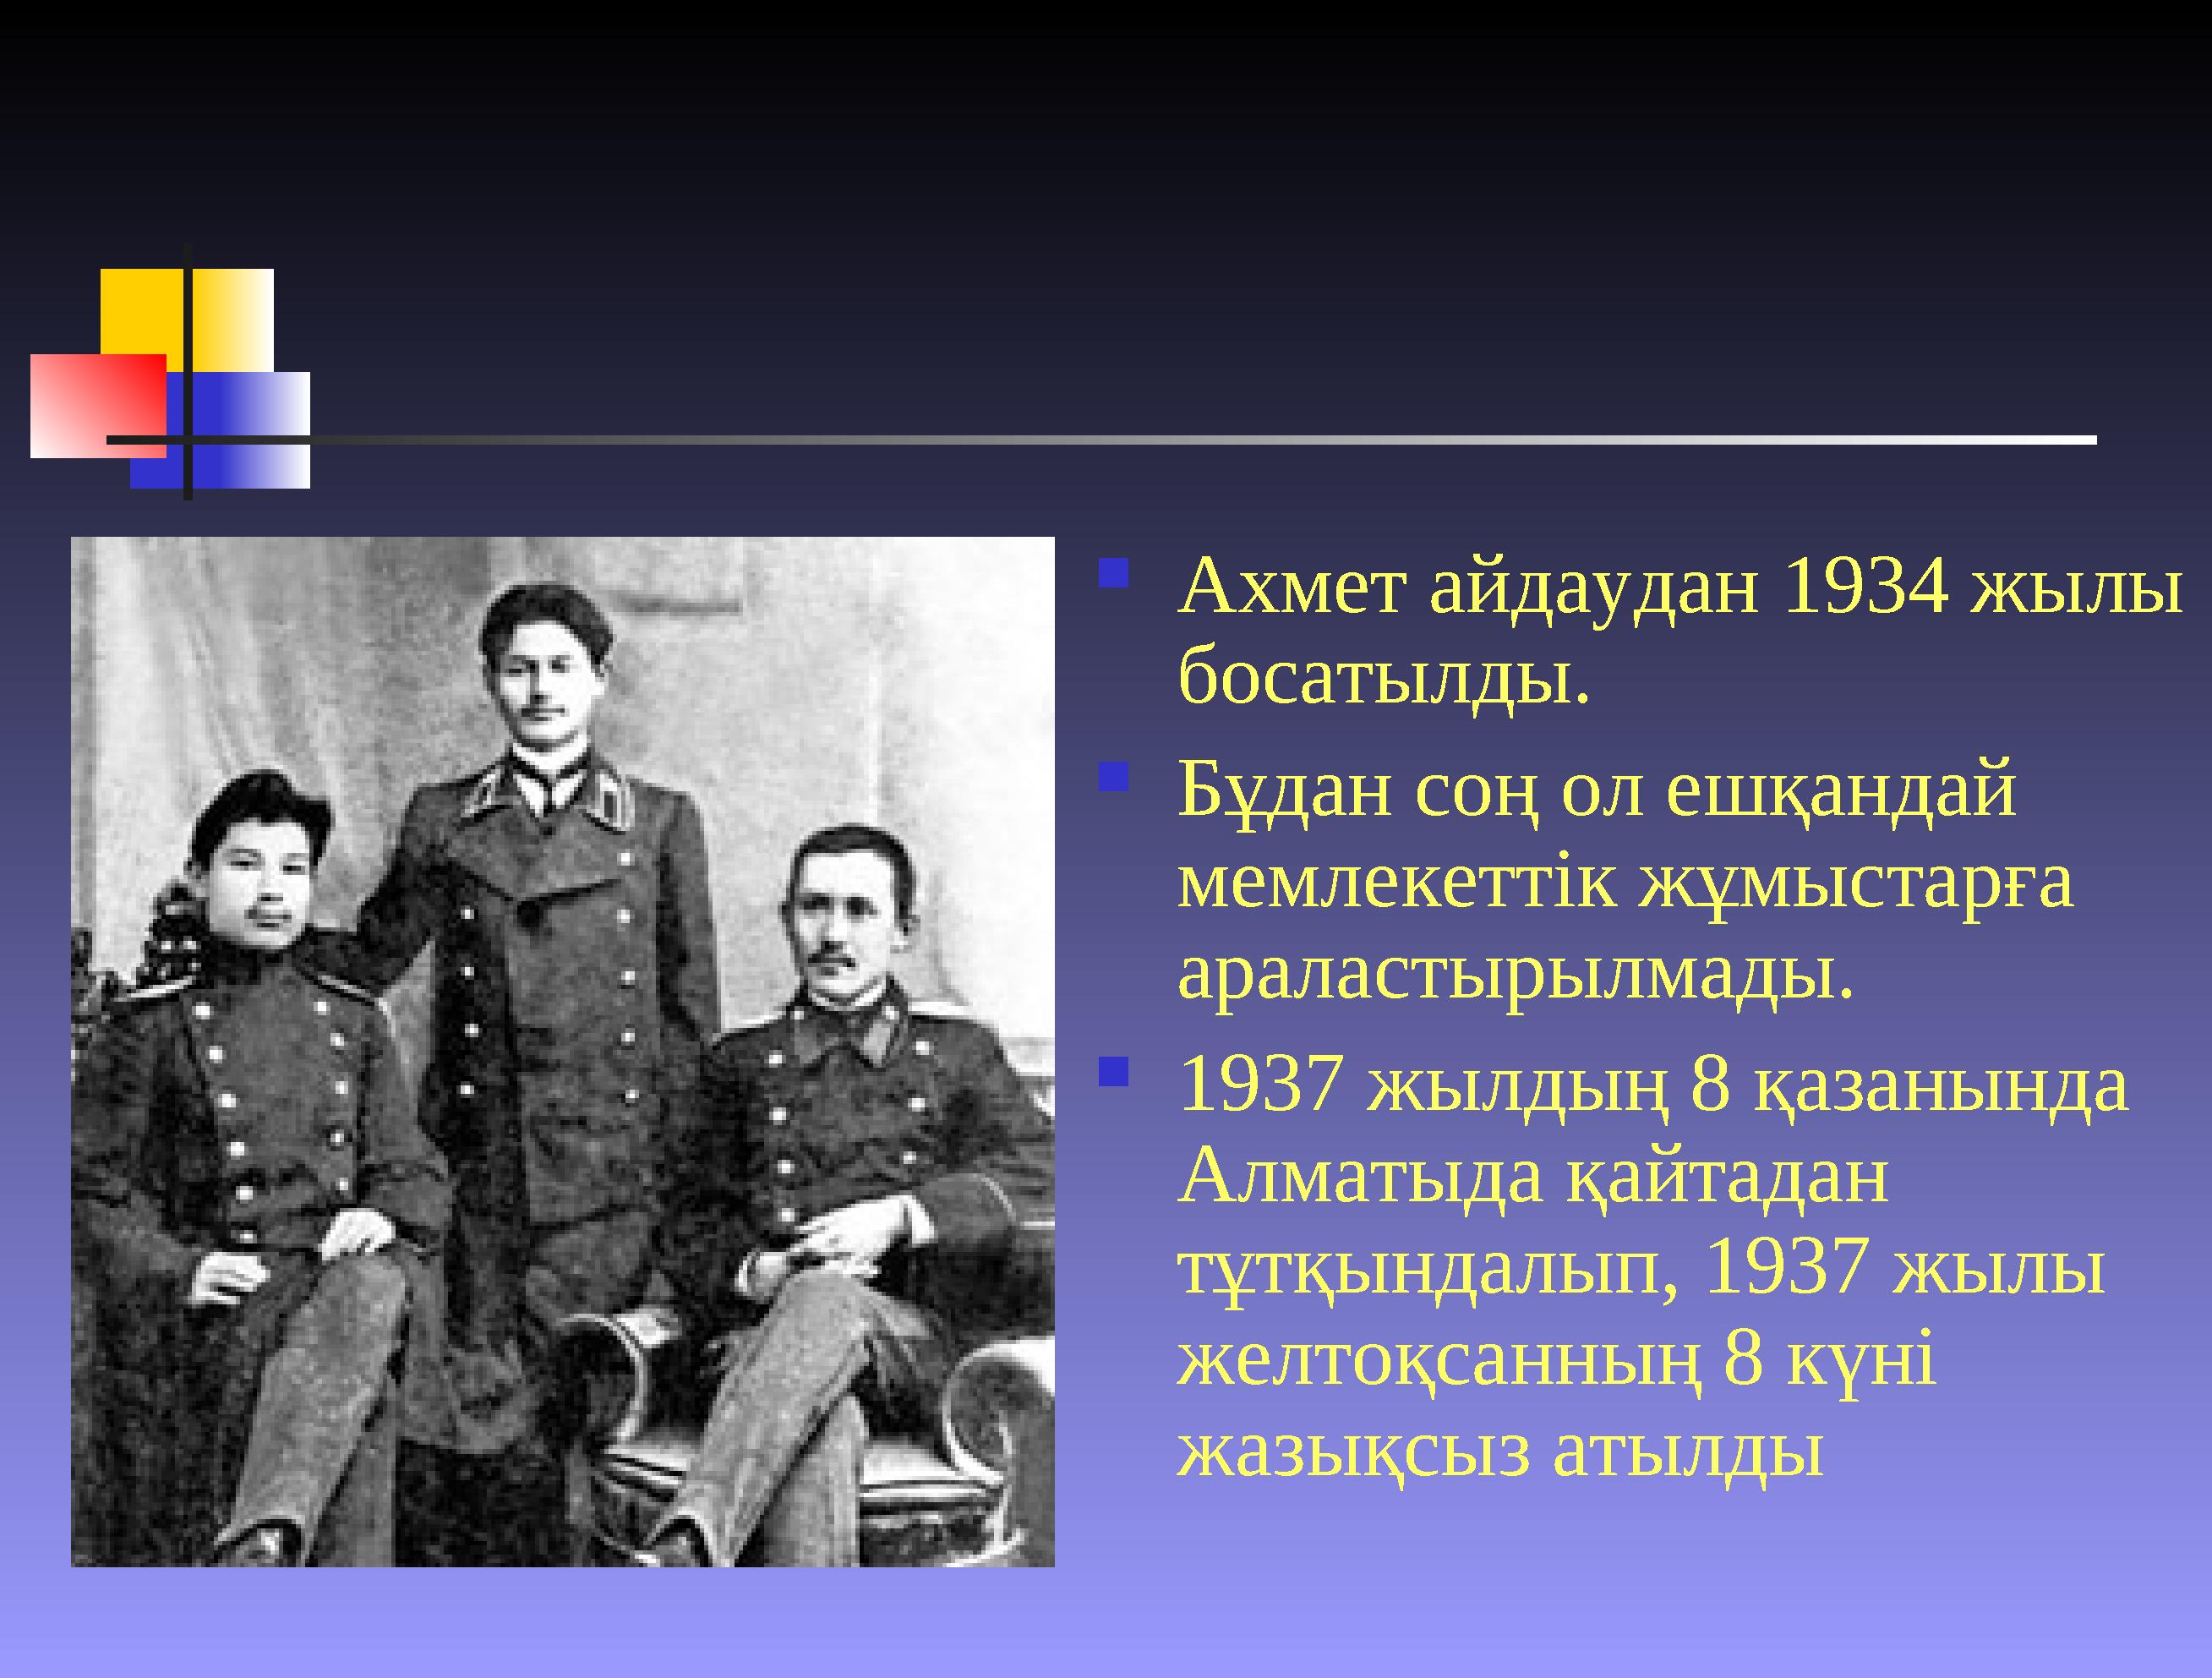  Ахмет айдаудан 1934 жылы босатылды.  Бұдан соң ол ешқандай мемлекеттік жұмыстарға араластырылмады.  1937 жылдың 8 қазанын